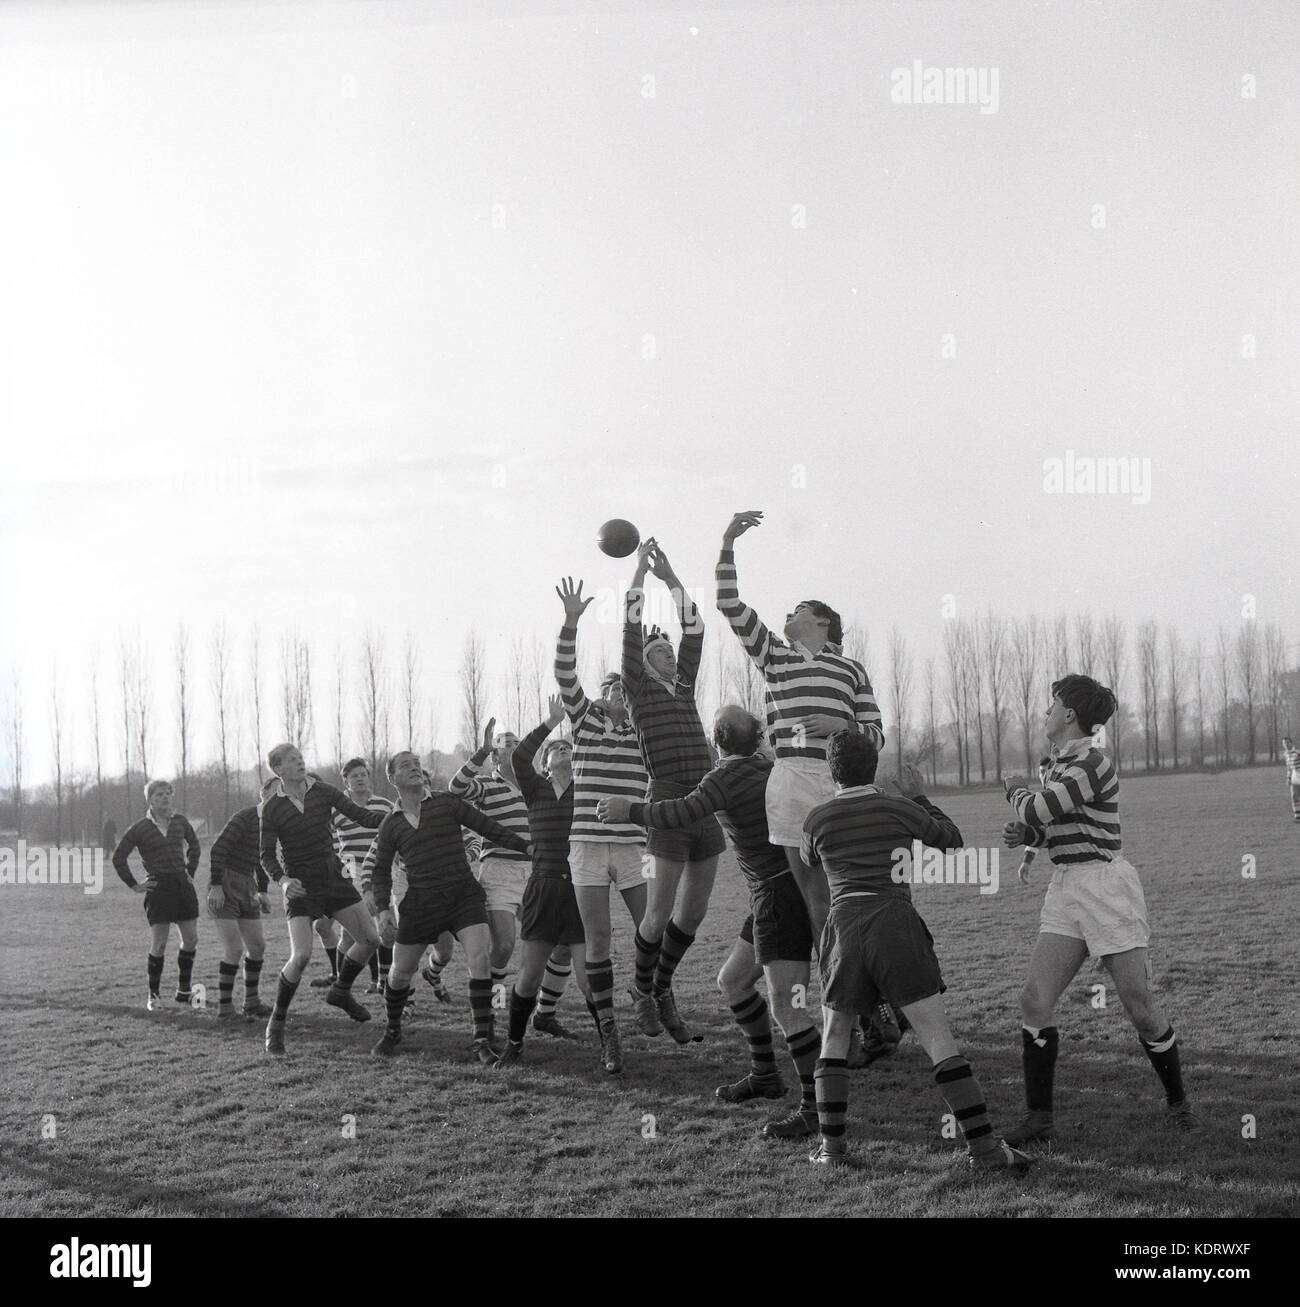 1960, historische, Bild zeigt ein Bewunderer Rugby Union übereinstimmt und die die zwei Mannschaften nach vorne im Wettbewerb um die Kugel an einem LINEOUT, England, UK. Stockfoto